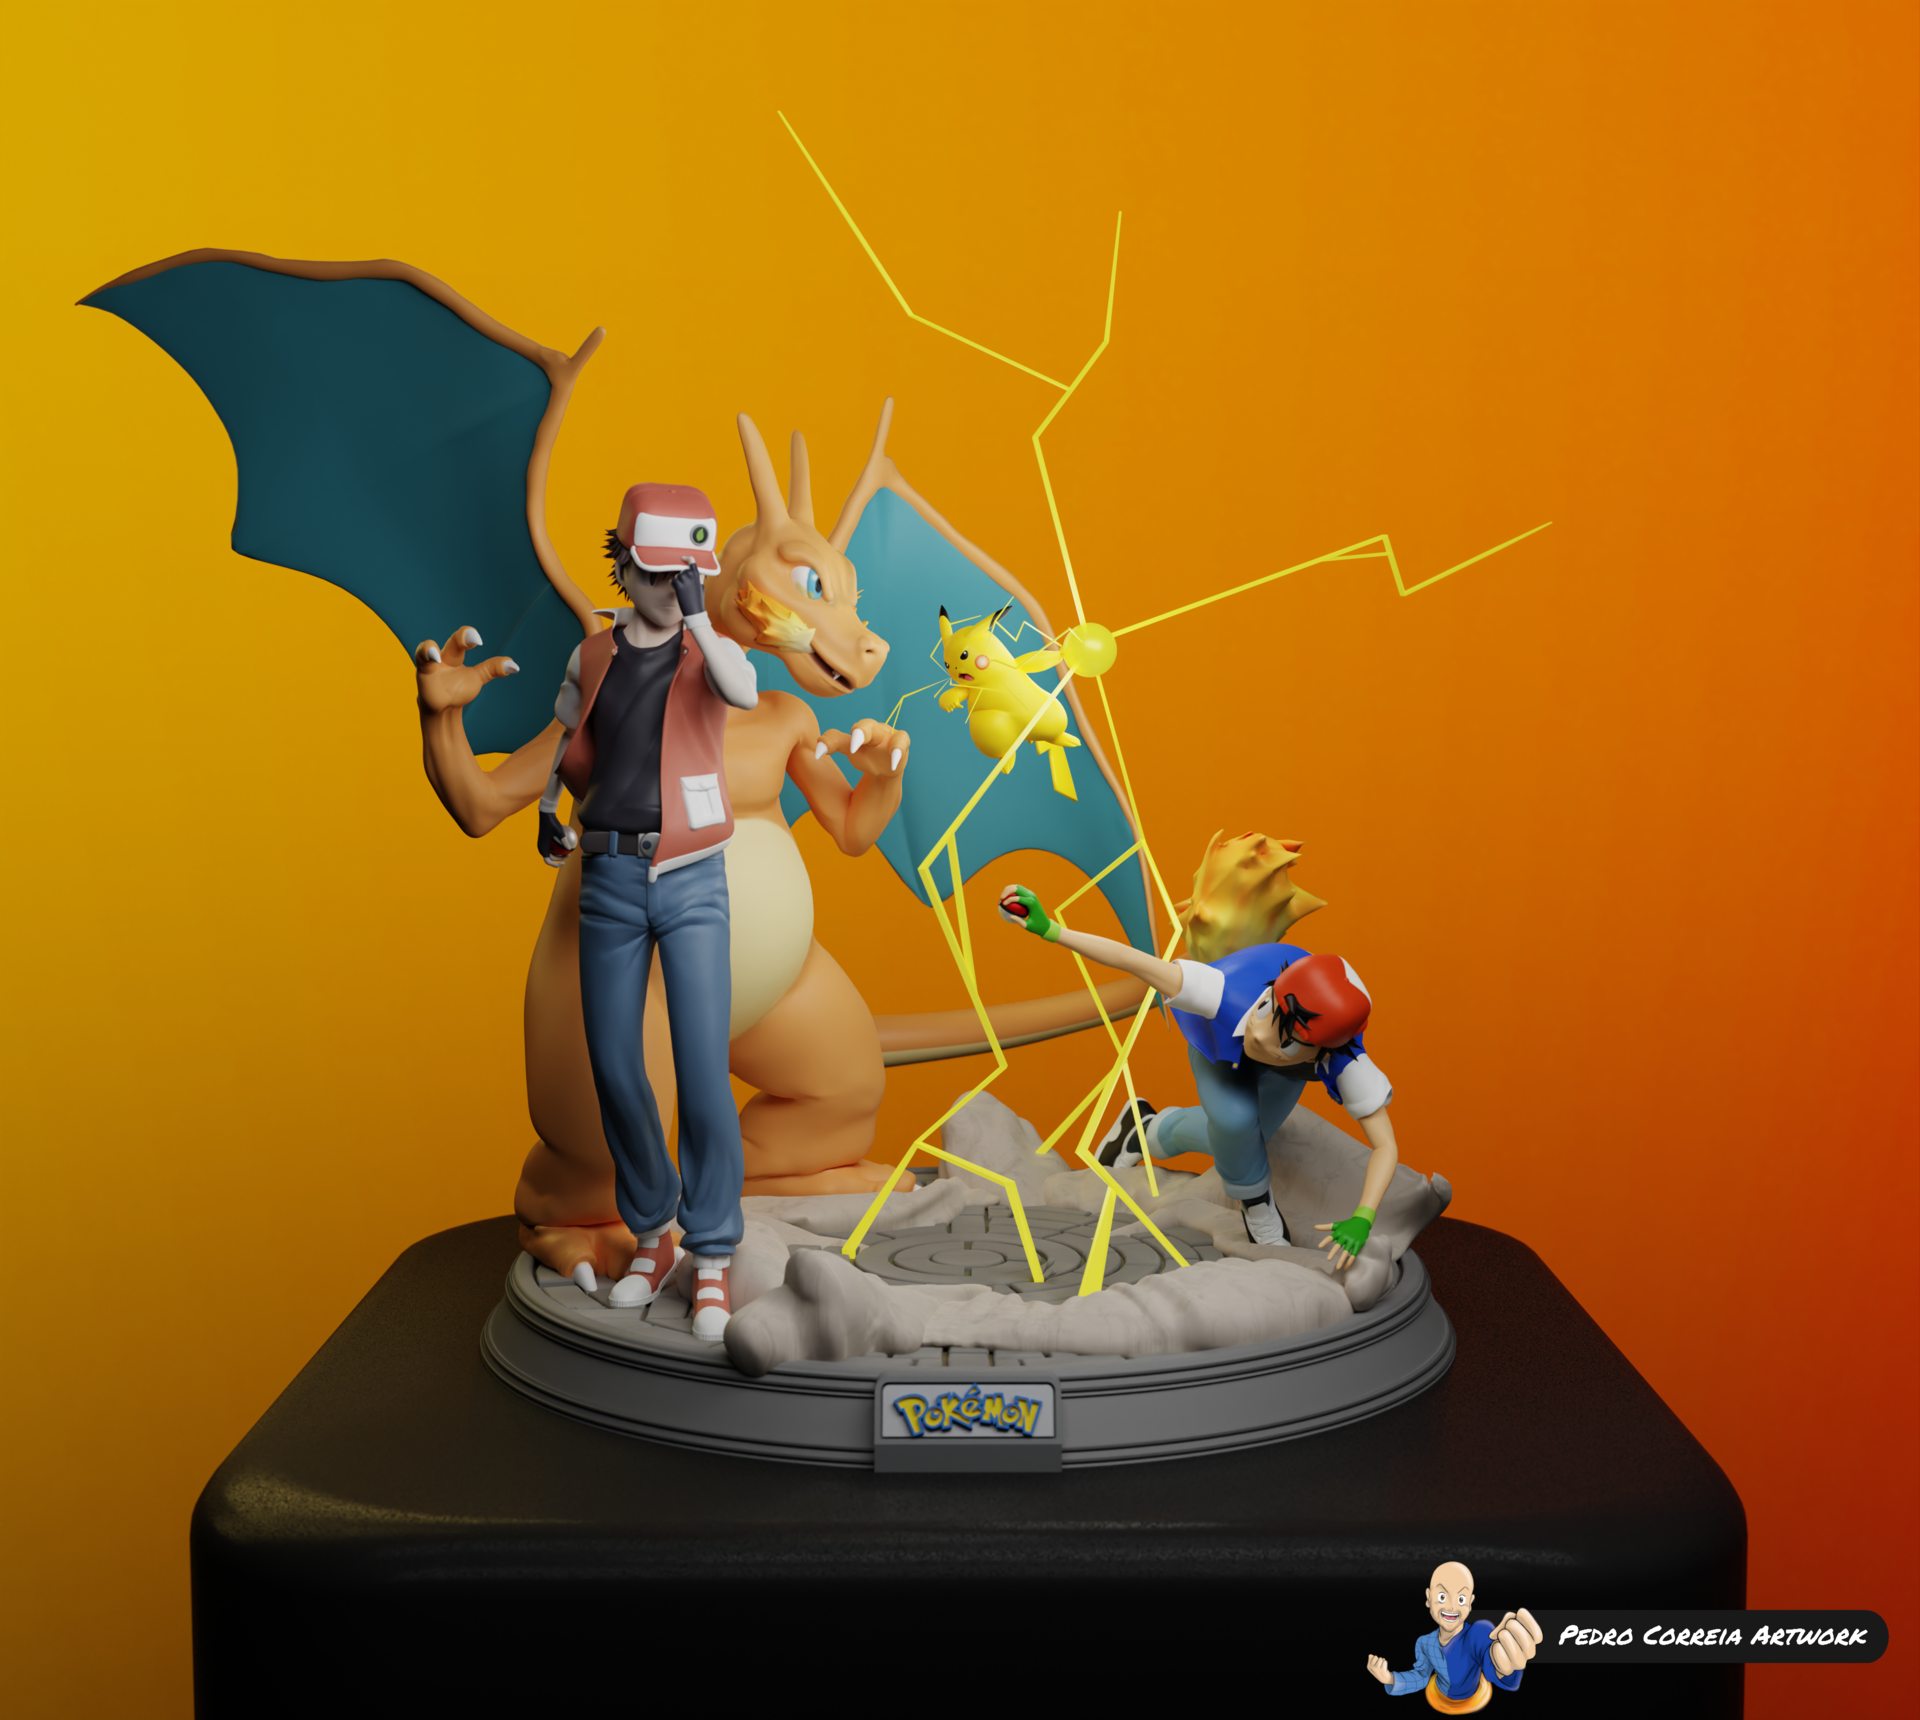 Pokémon Figurine - Finished Projects - Blender Artists Community